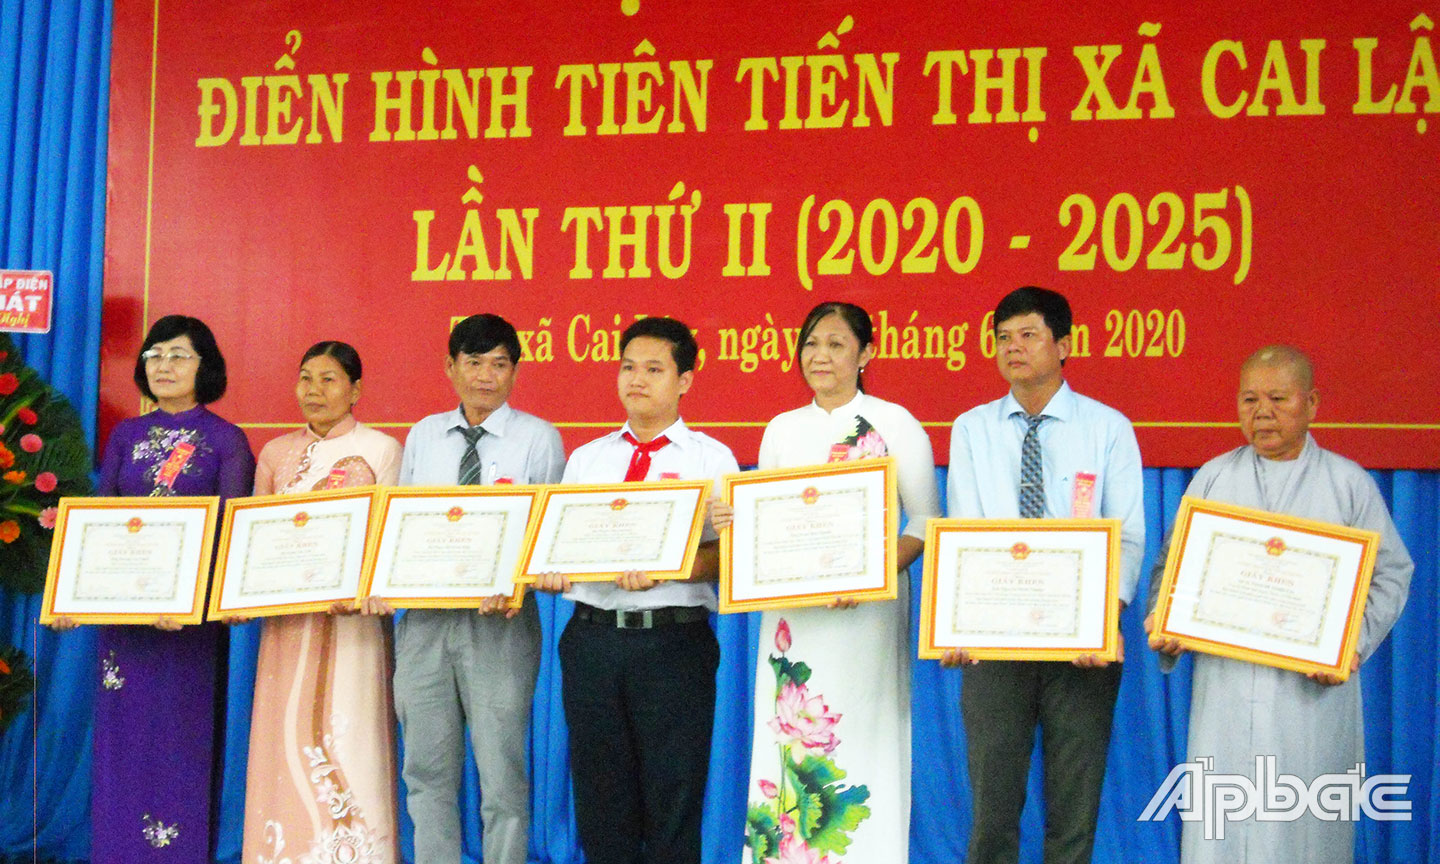 Em Nguyễn MInh Nhuận (giữa) được vinh danh tại Hội nghị Điển hình tiên tiến TX. Cai Lậy lần thứ II (2020 - 2025).